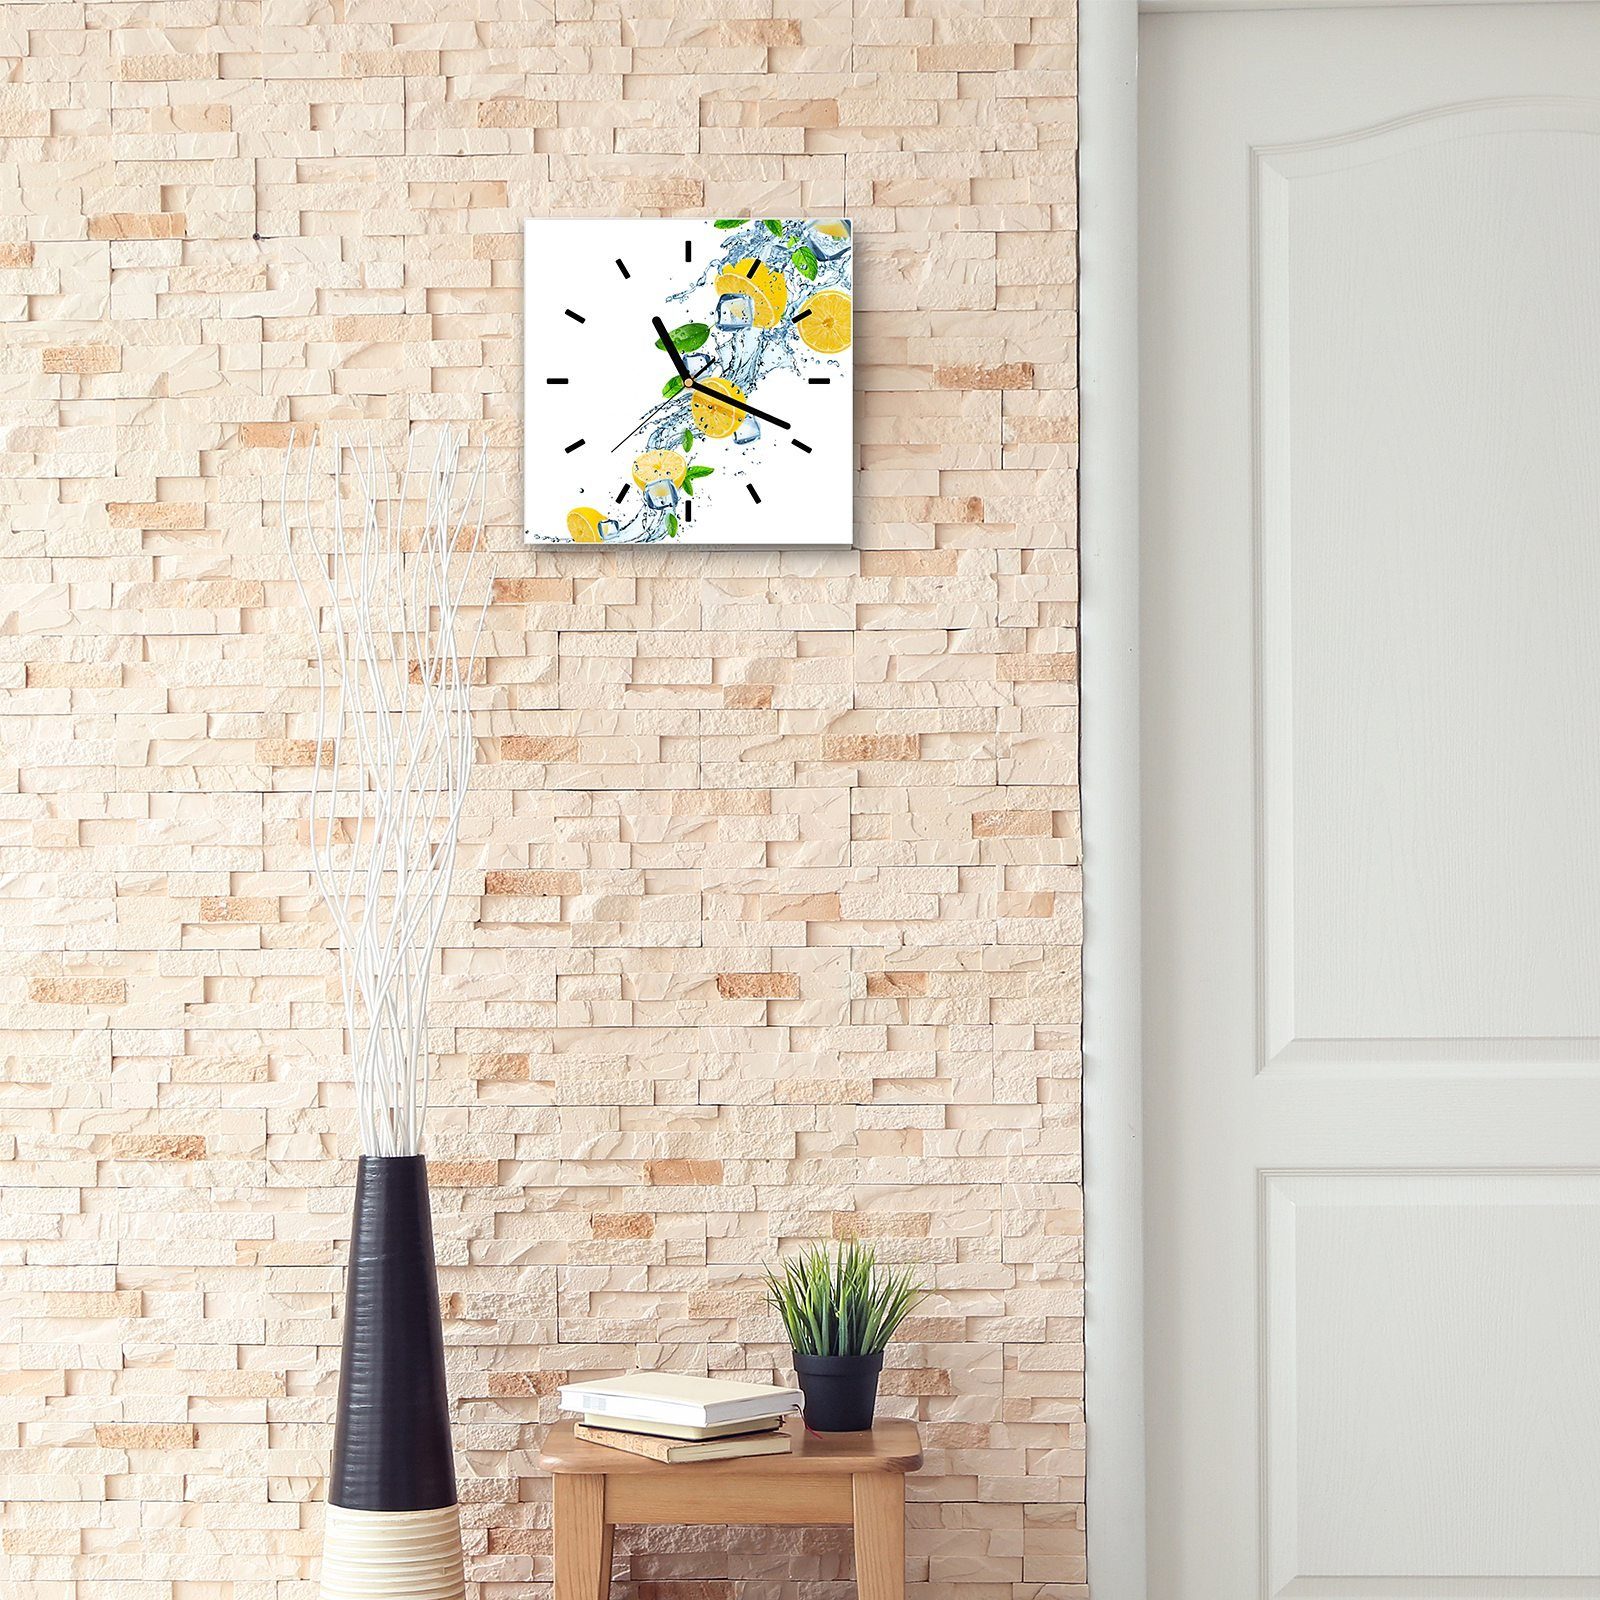 Wanduhr Zitronen Größe auf Glasuhr Wanduhr Primedeco Motiv 30 30 mit Wandkunst Wasserwelle x cm